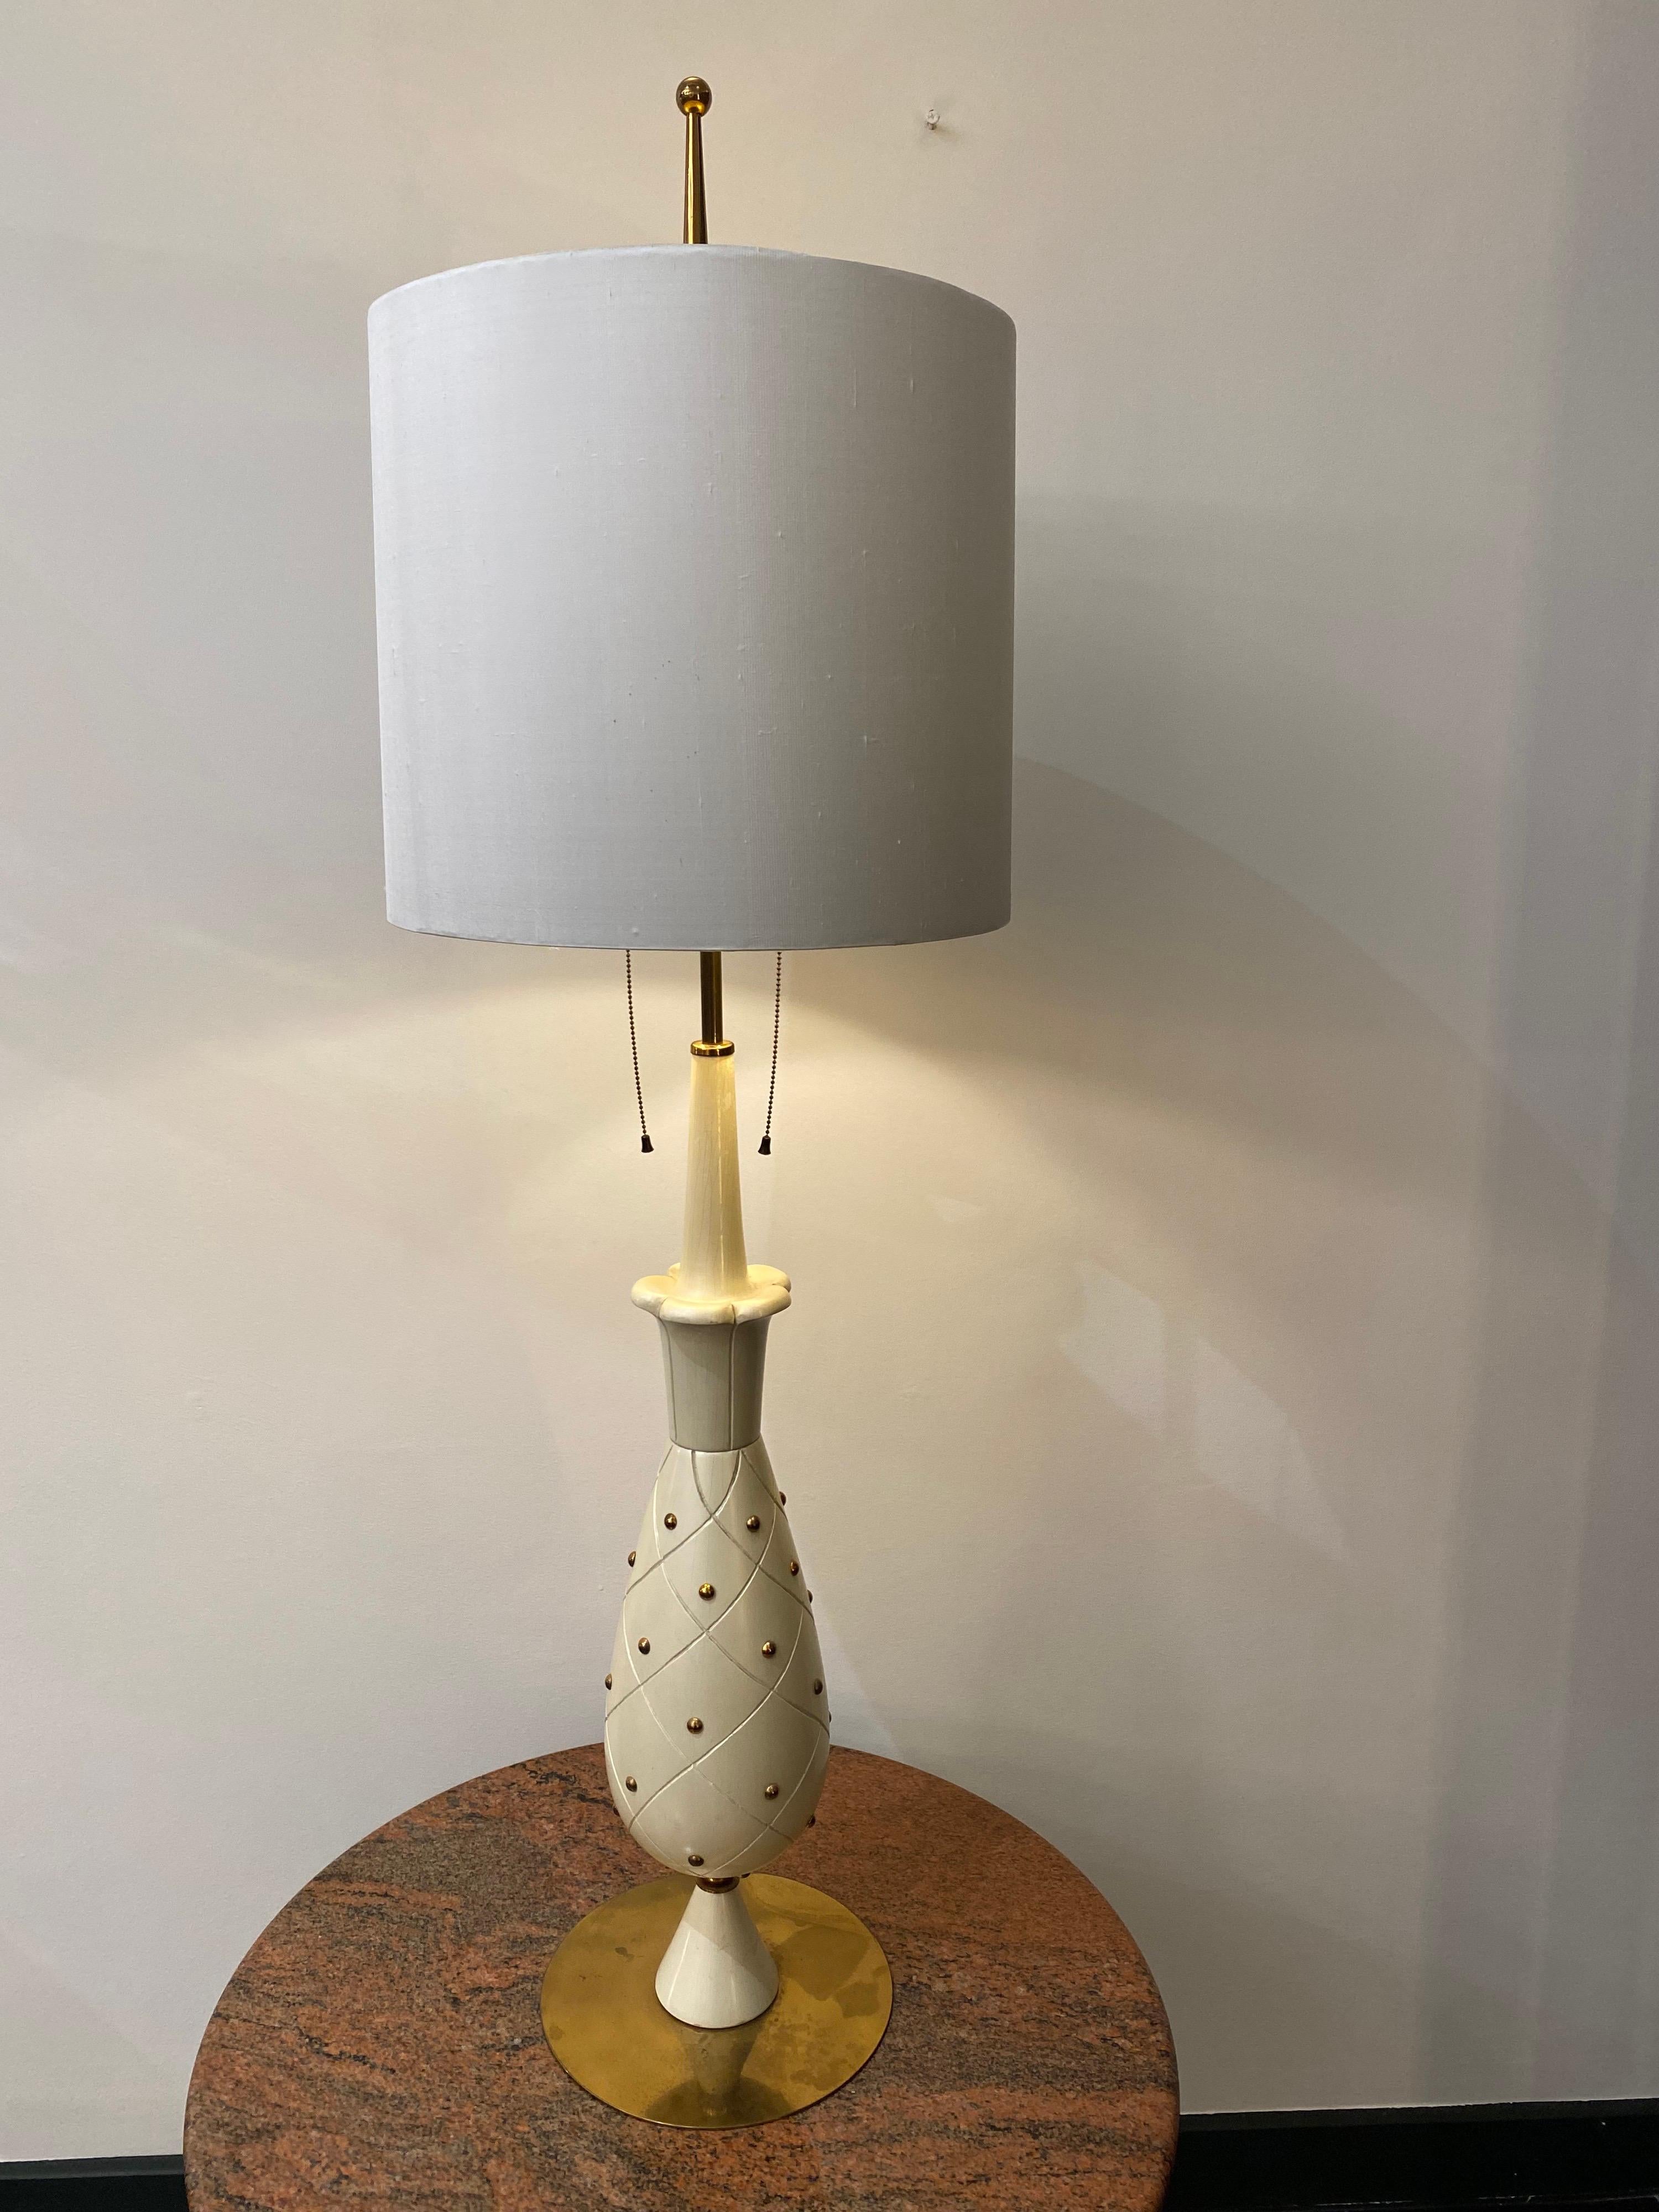 Une rare lampe de table émaillée nacrée en bois sculpté et détails en laiton représentant un ananas att. à Silnovo. Elle comporte deux luminaires, chacun actionné par un interrupteur à tirette en laiton.

Dimensions : Diamètre : 42cm, Hauteur :